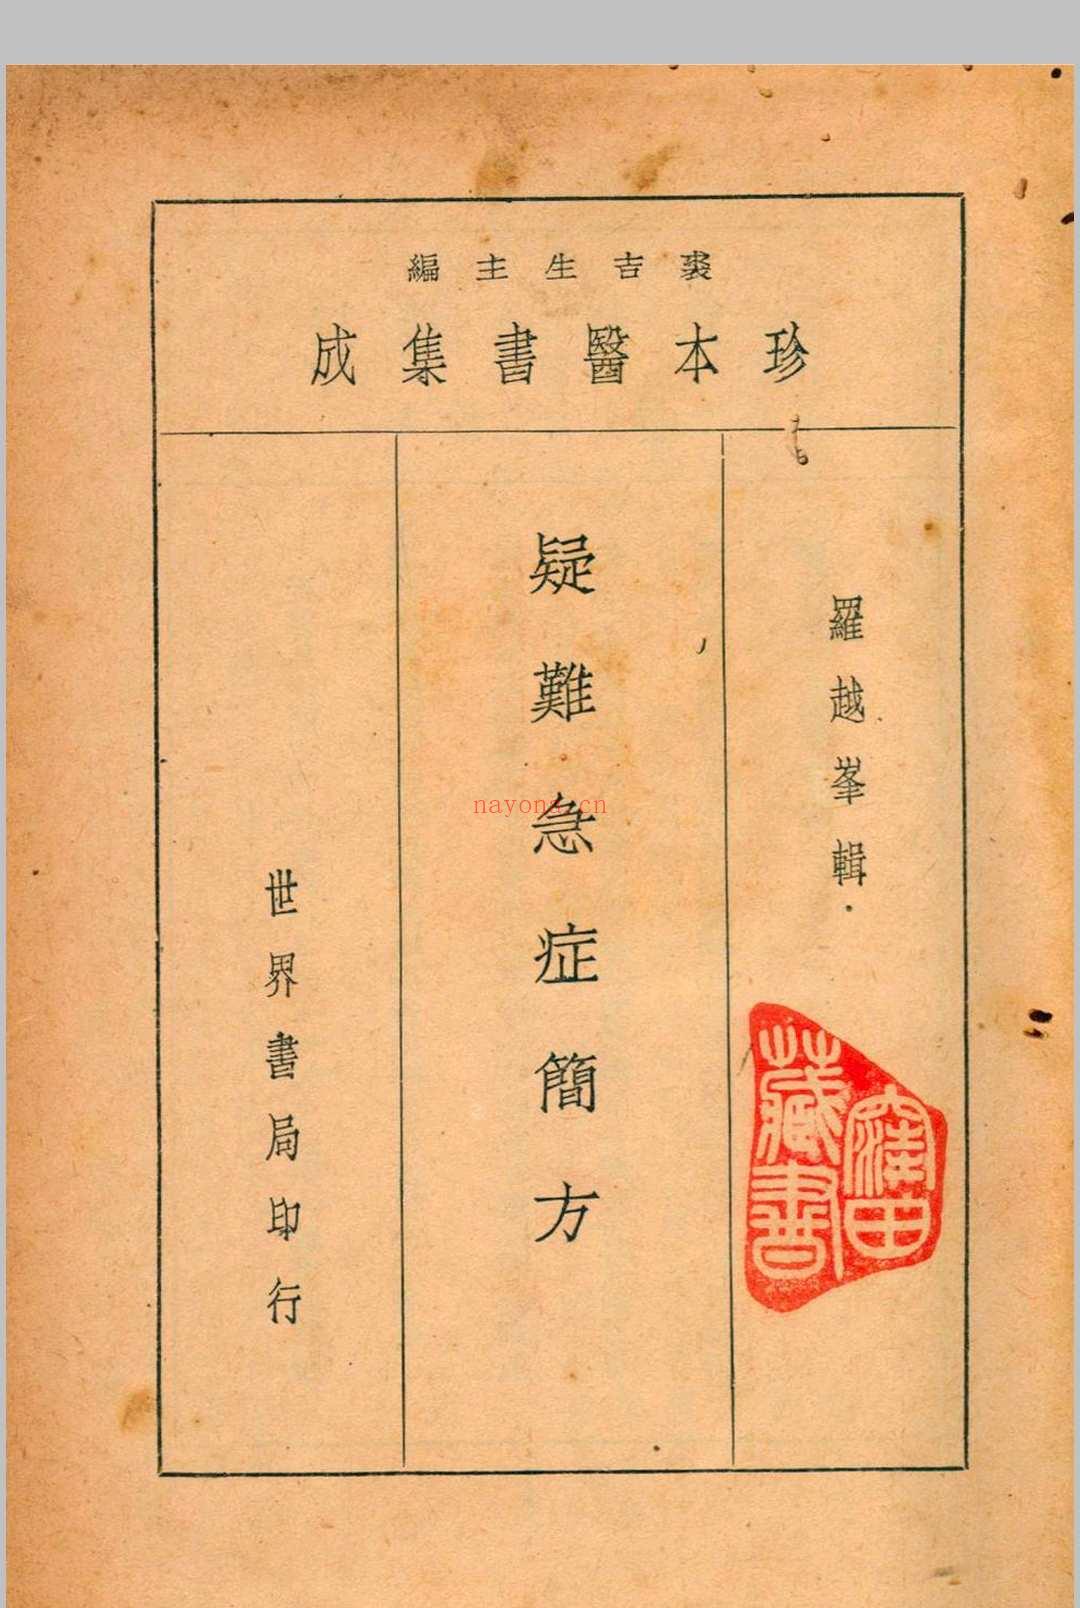 珍本医书集成 第十一册 裘吉生主编 1936 世界书局